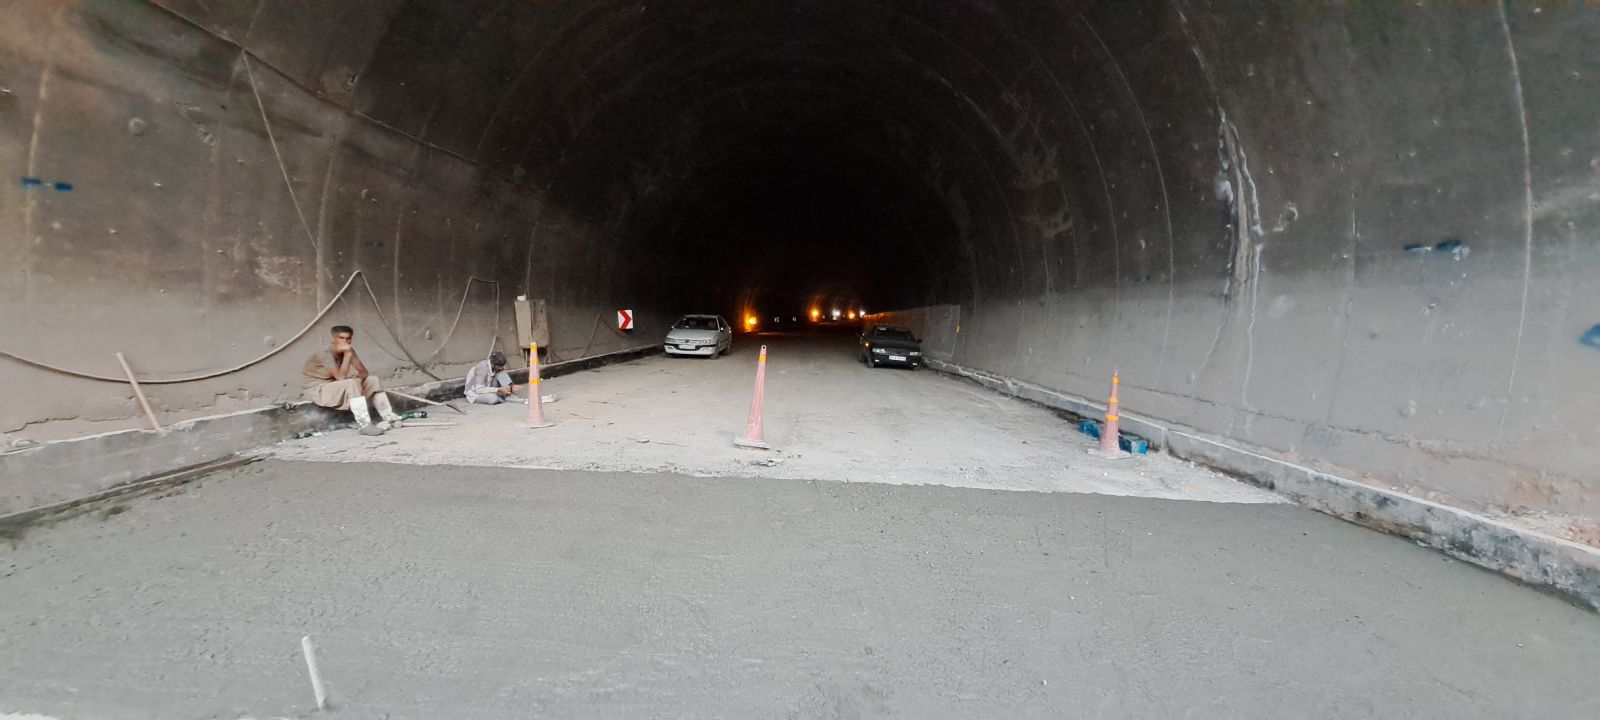  پروژه ۱۳۶ کیلومتری جاده پاتاوه به دهدشت آماده افتتاح در سفر رئیس جمهور